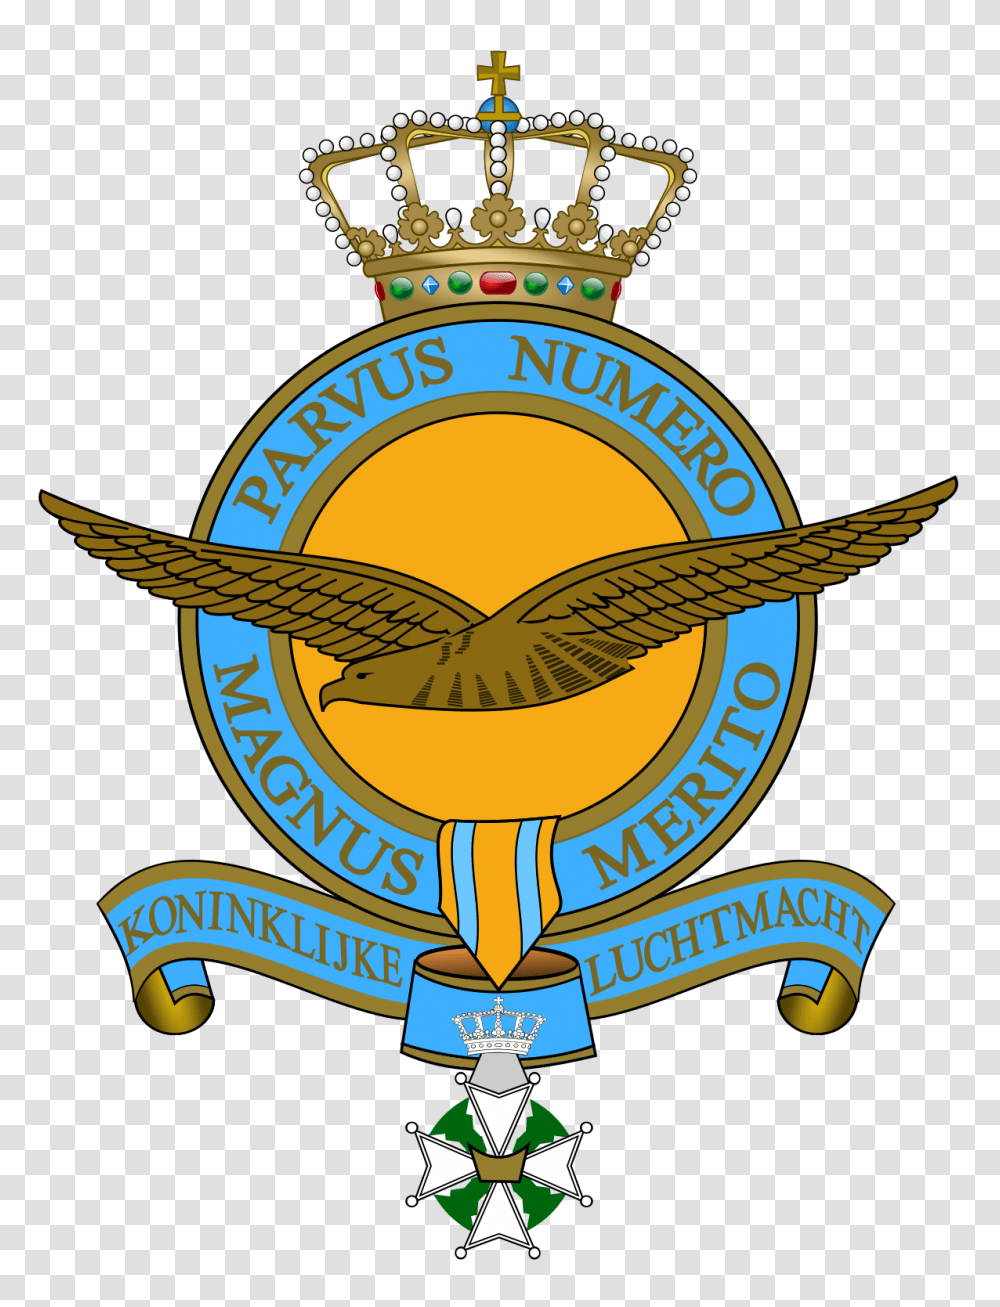 Royal Netherlands Air Force, Logo, Trademark, Emblem Transparent Png